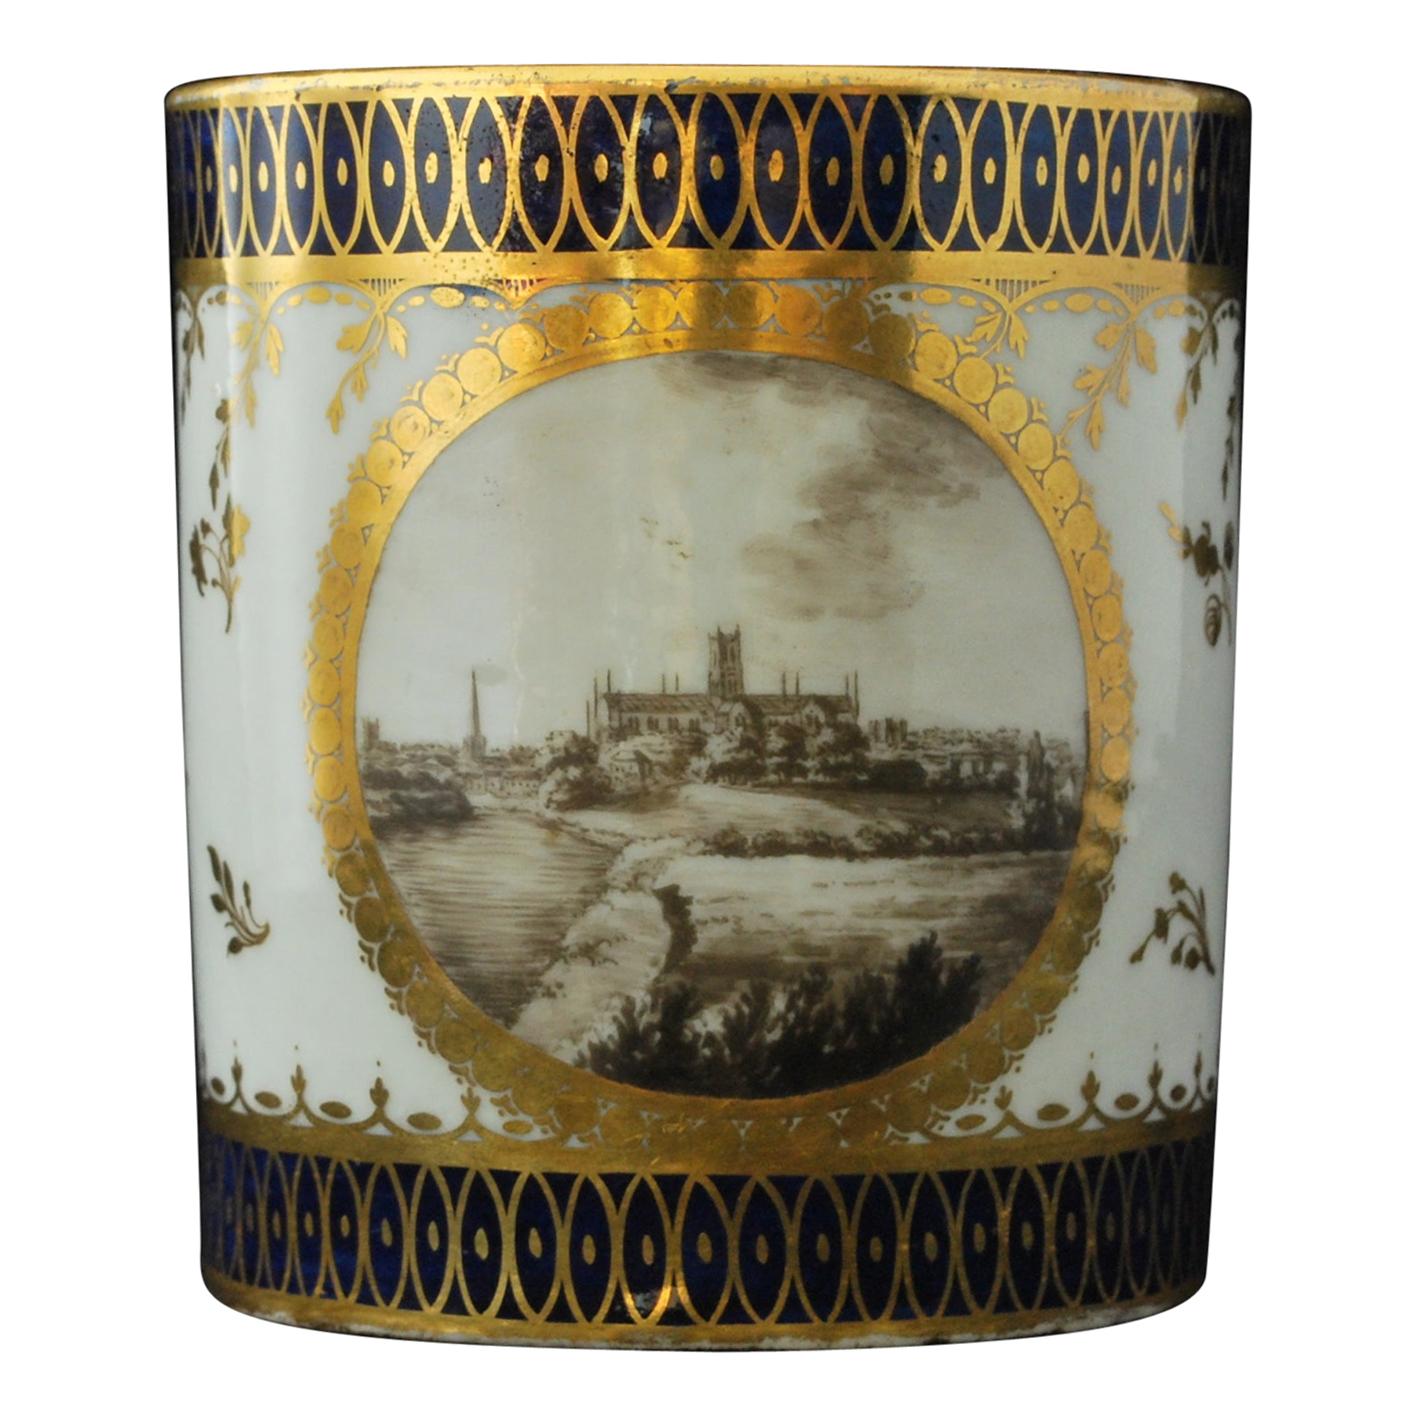 Mongrammierte RR-Kaffeekanne mit Landschaftsmotiv:: Chamberlain Worcester:: um 1810